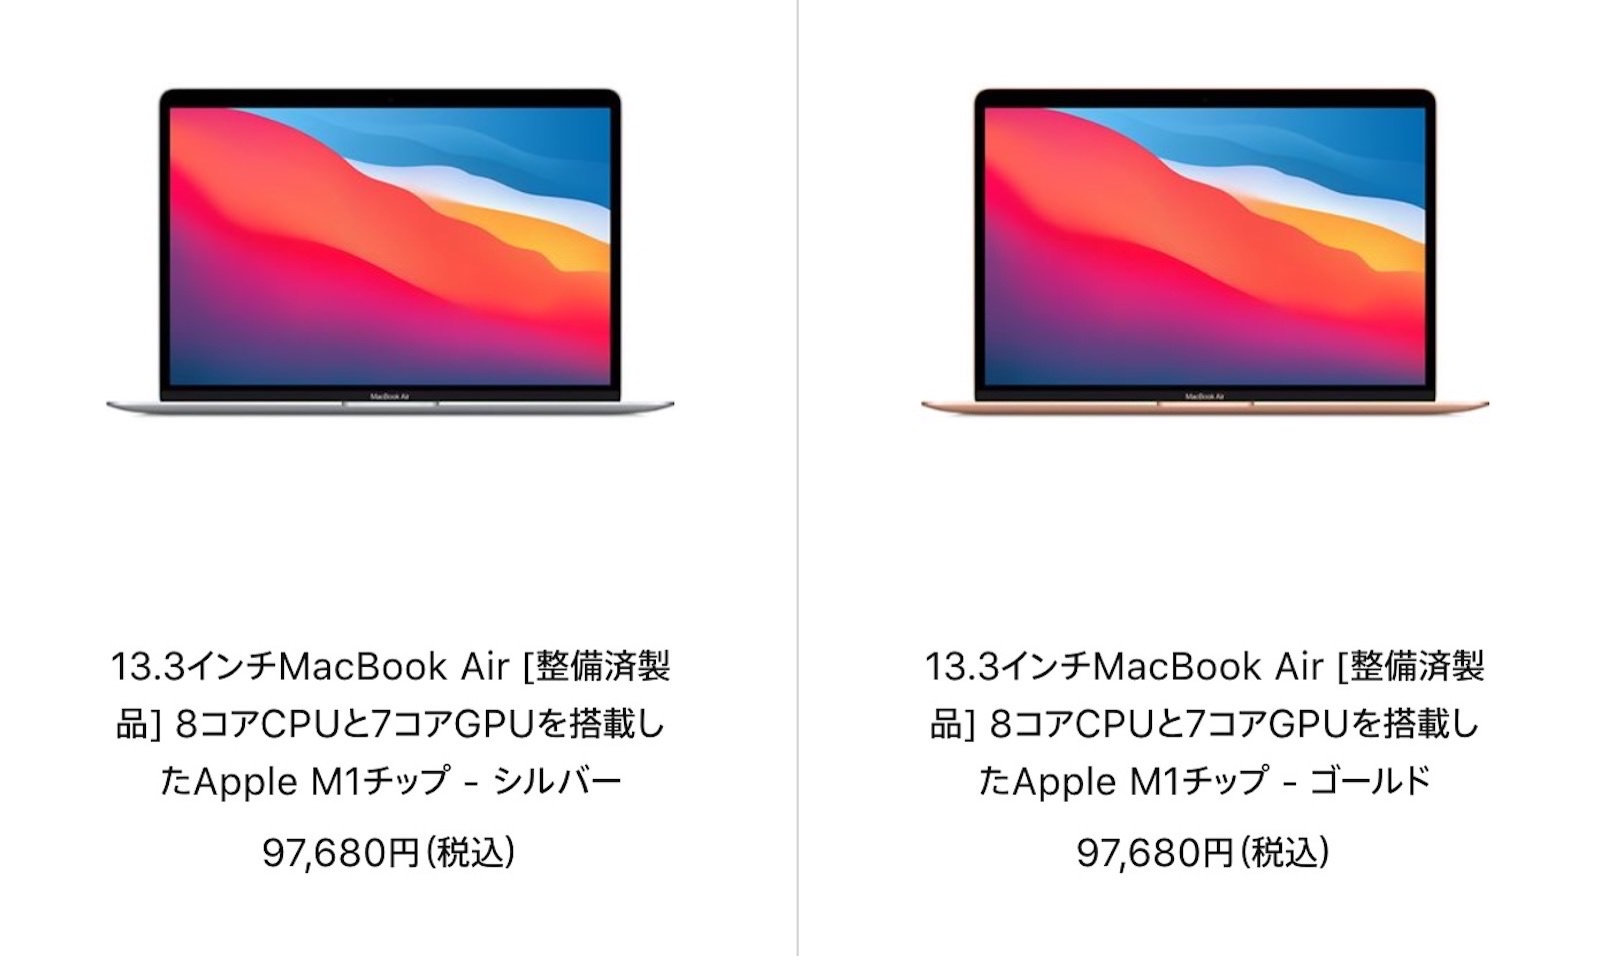 Mac-Refurbished-model-2021-11-08.jpg